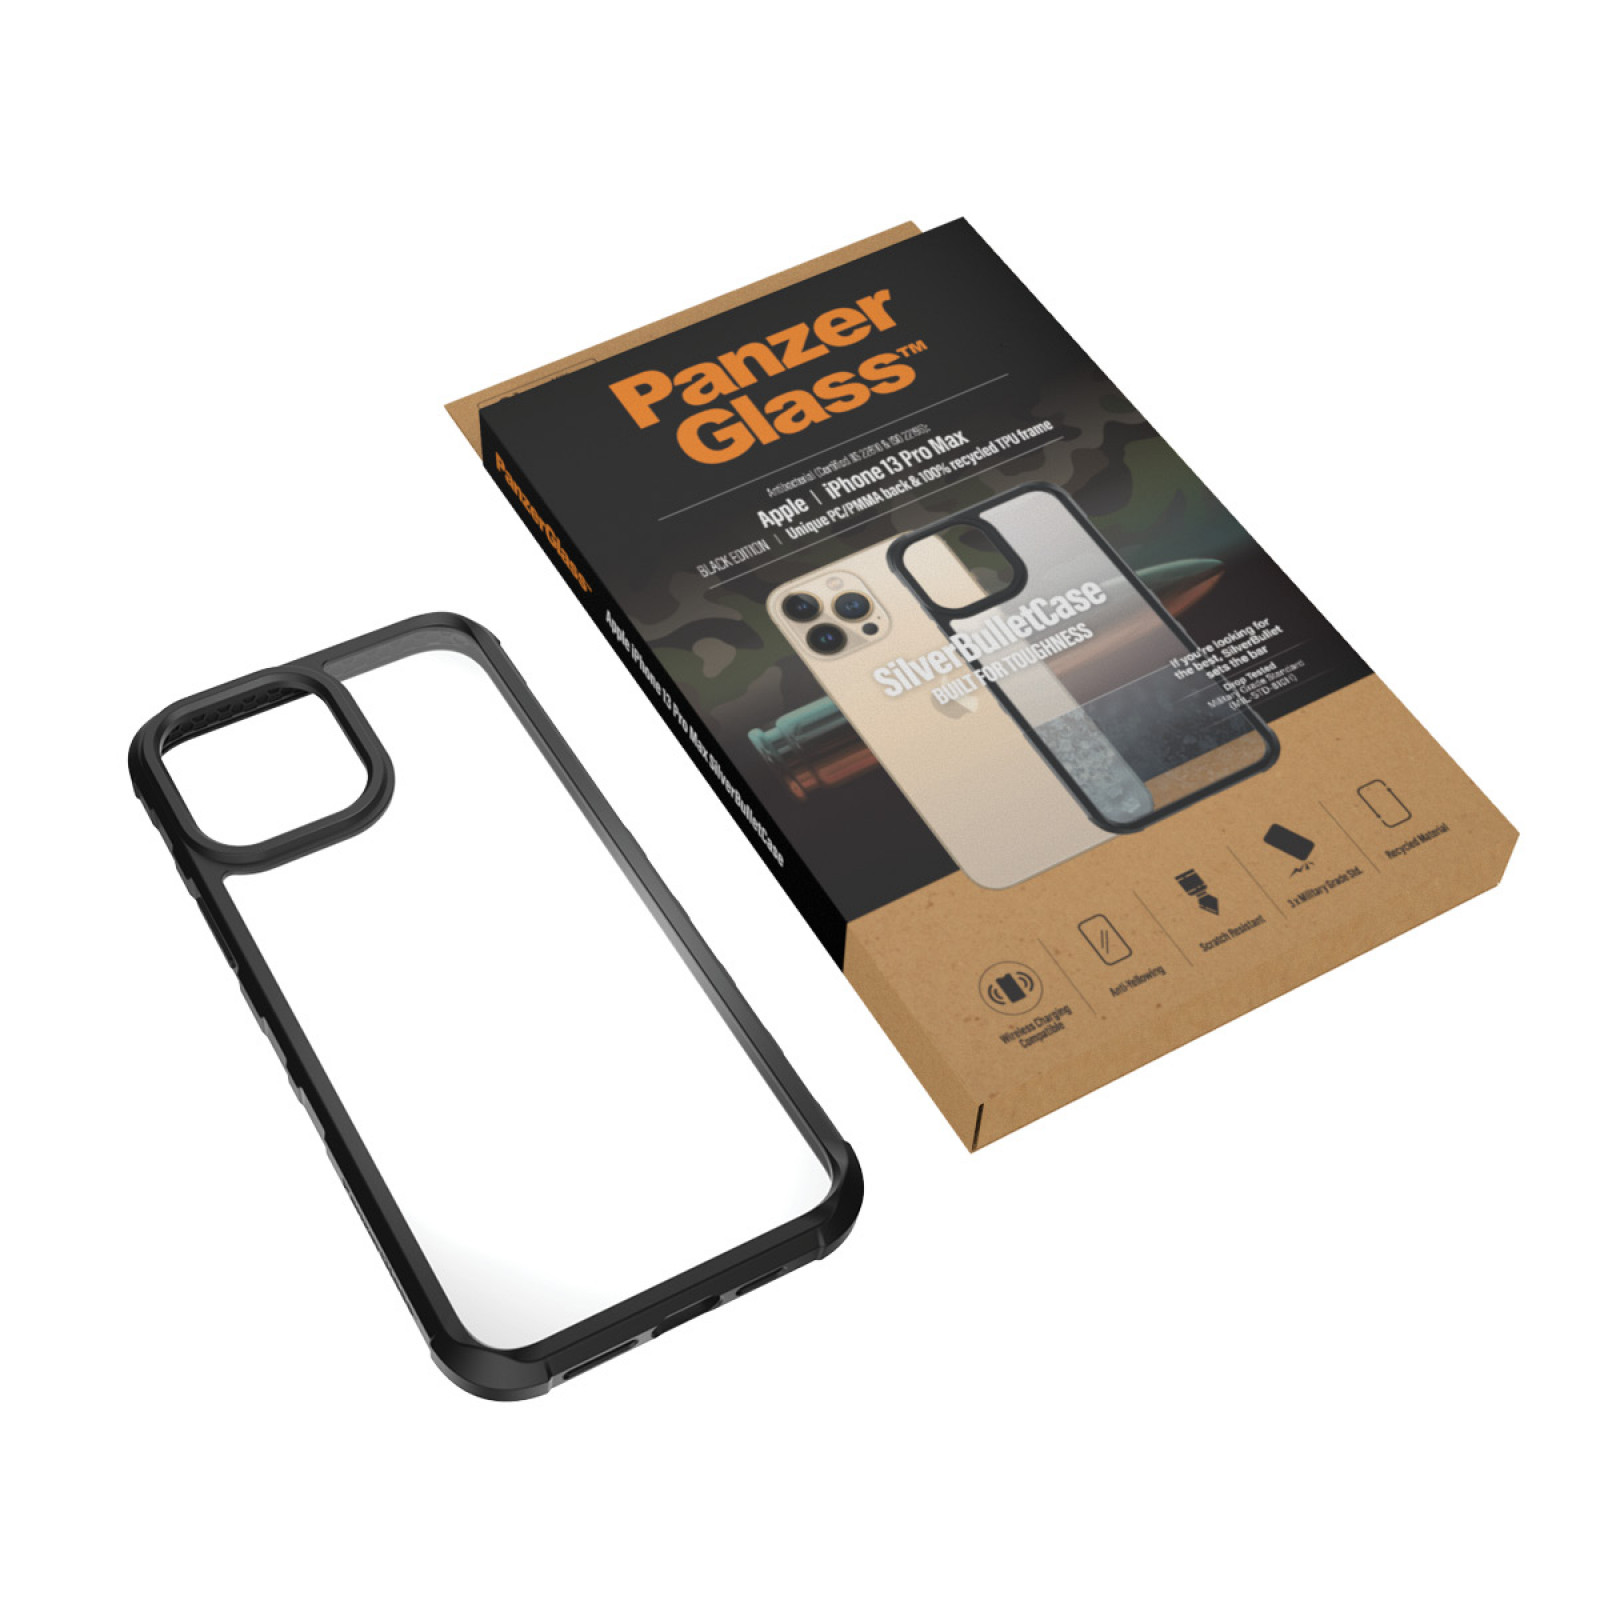 Гръб PanzerGlass SilverBulletCase за Iphone 13 Pro Max  - Черна рамка